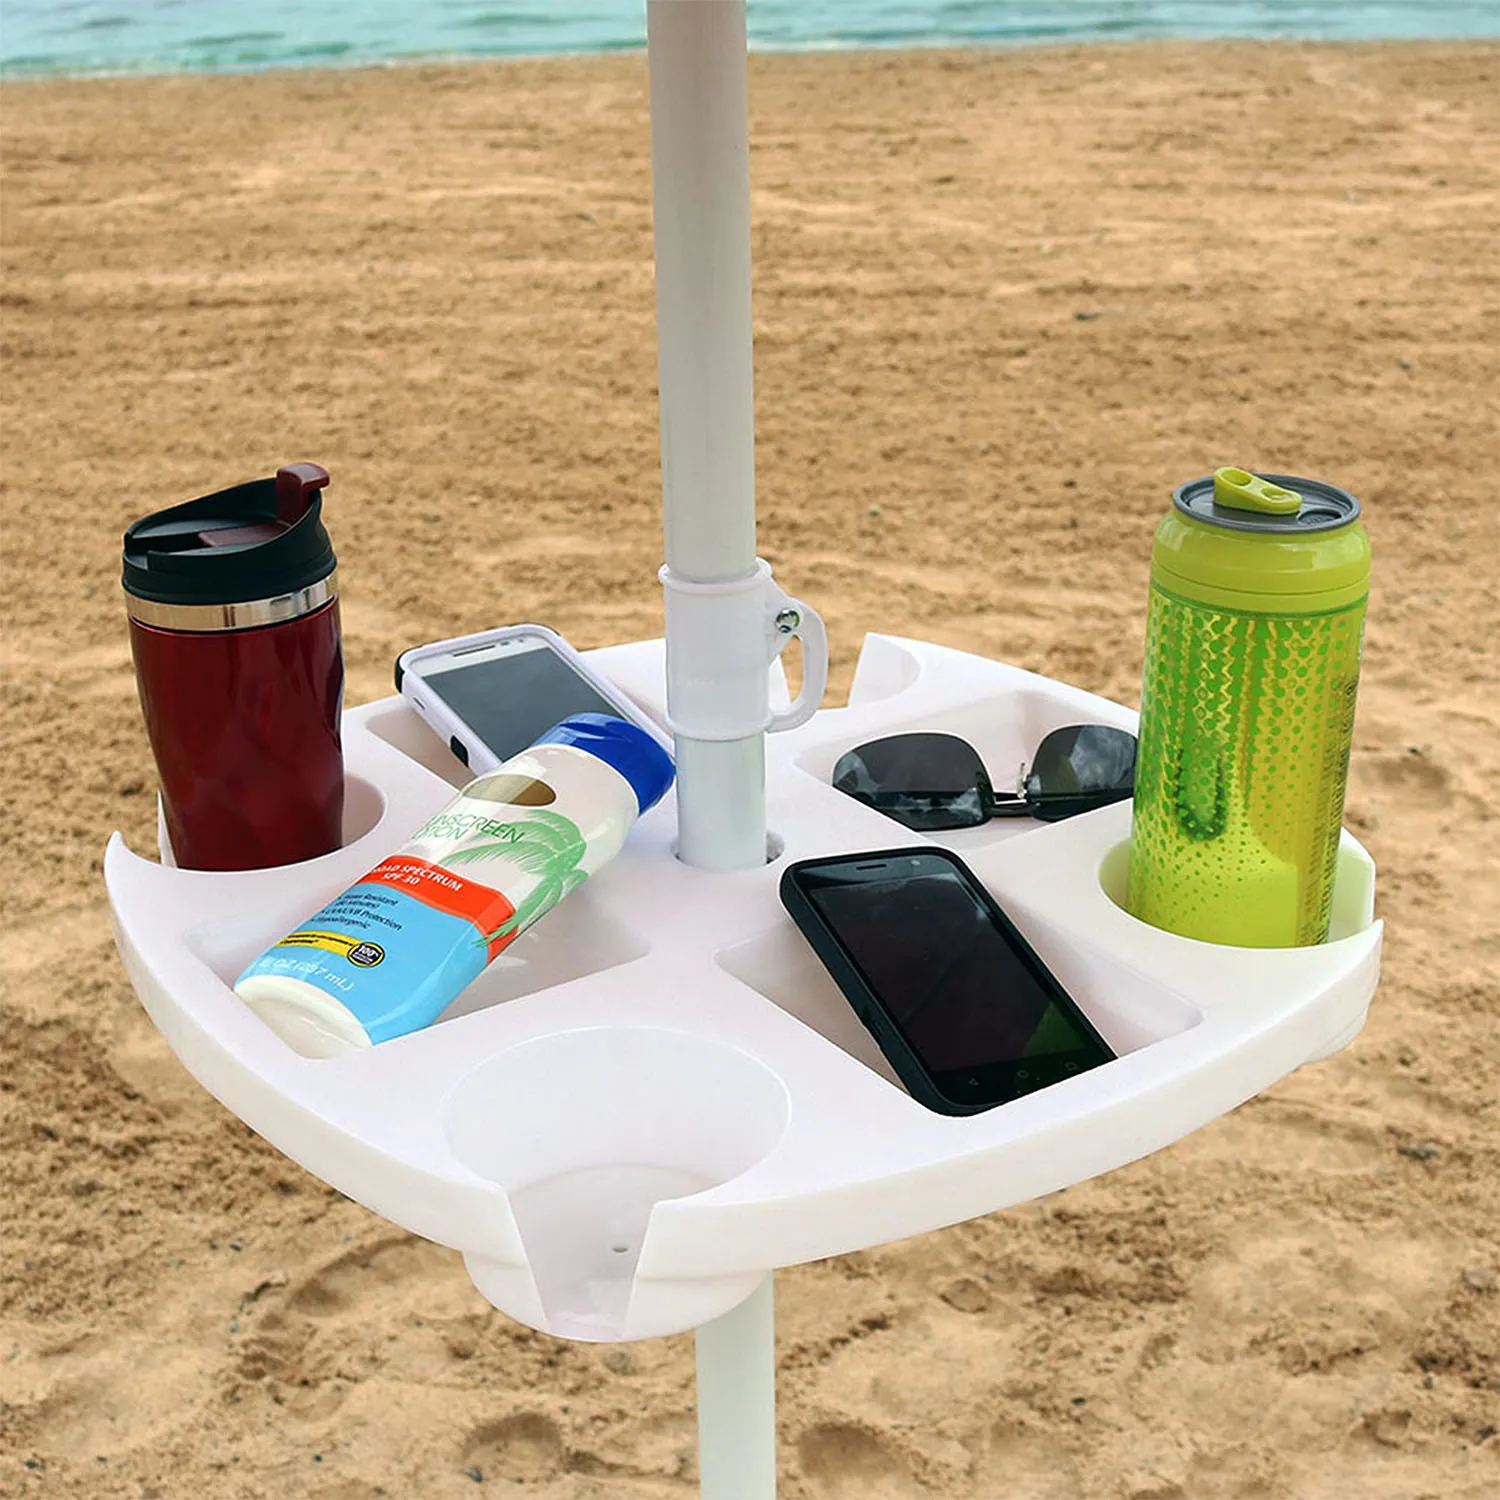 CIBeach poslužavnik za suncobran sa 4 držača za čaše i 4 odeljka za grickalice – idealan za plaže i bašte! – BAŠTENSKI NAMEŠTAJ